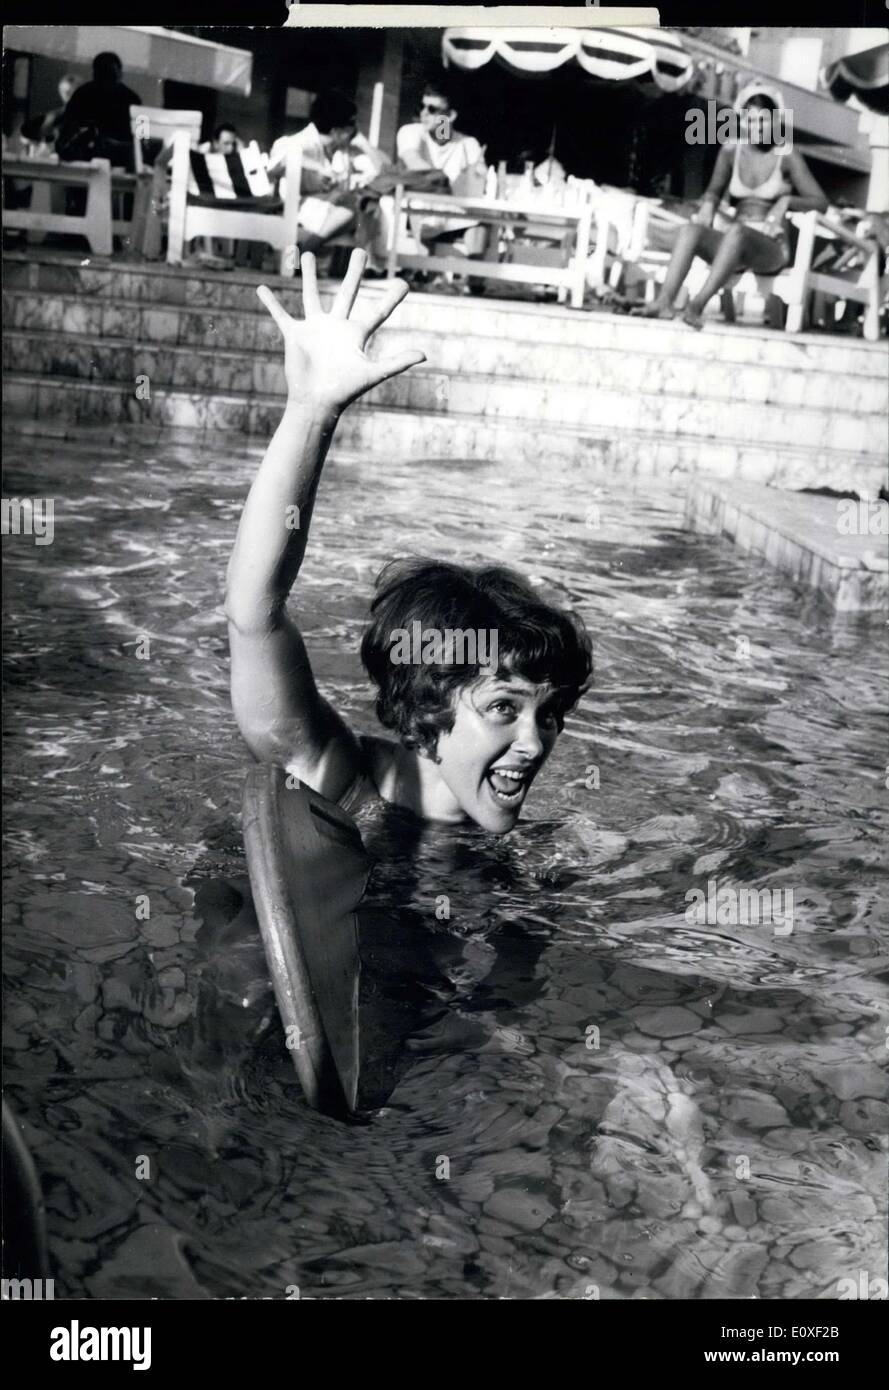 Le 13 août 1966 Zara Rika - l'un des leader français de star pour le chant et le cinéma (né en Israël) n'est pas plus peur de la voir. Quand elle était jeune elle a un accident et j'avais peur de nager, mais que la photo montre qu'elle profiter à Cannes dans la piscine de l'hôtel. Banque D'Images